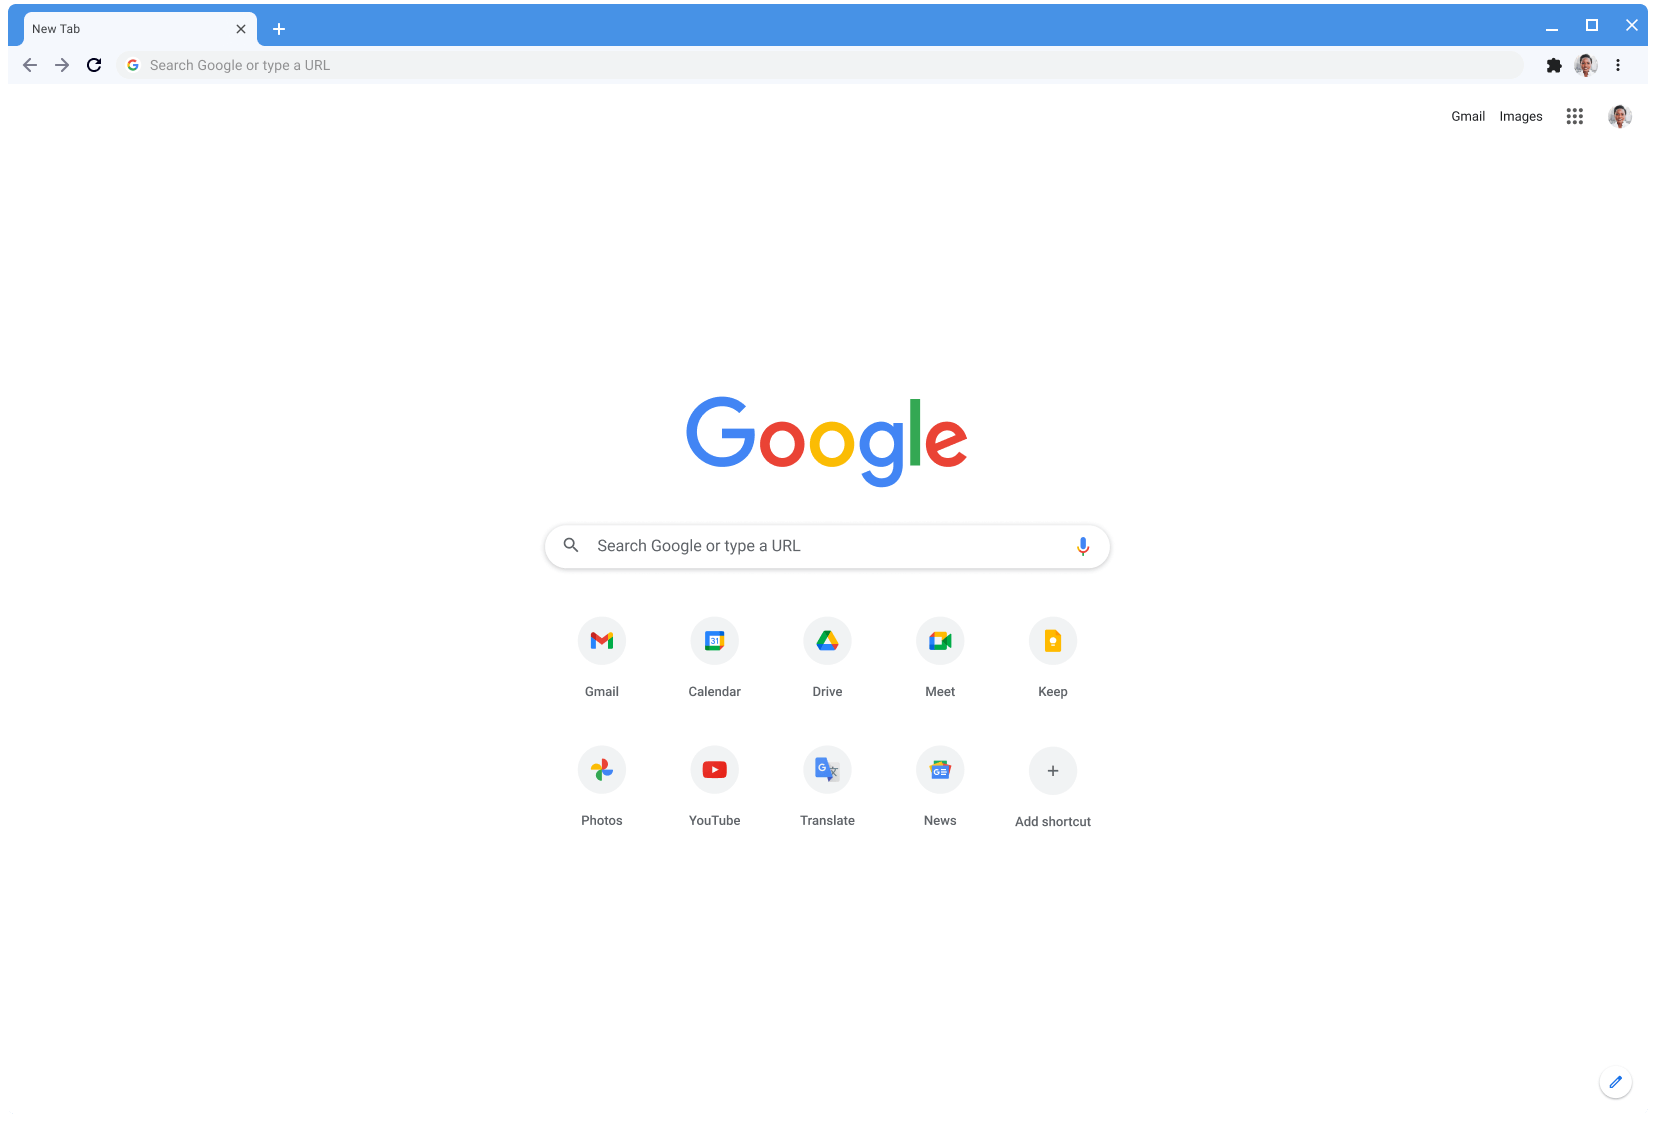 หน้าต่างเบราว์เซอร์ Chrome ที่แสดง Google.com โดยใช้ธีม Classic